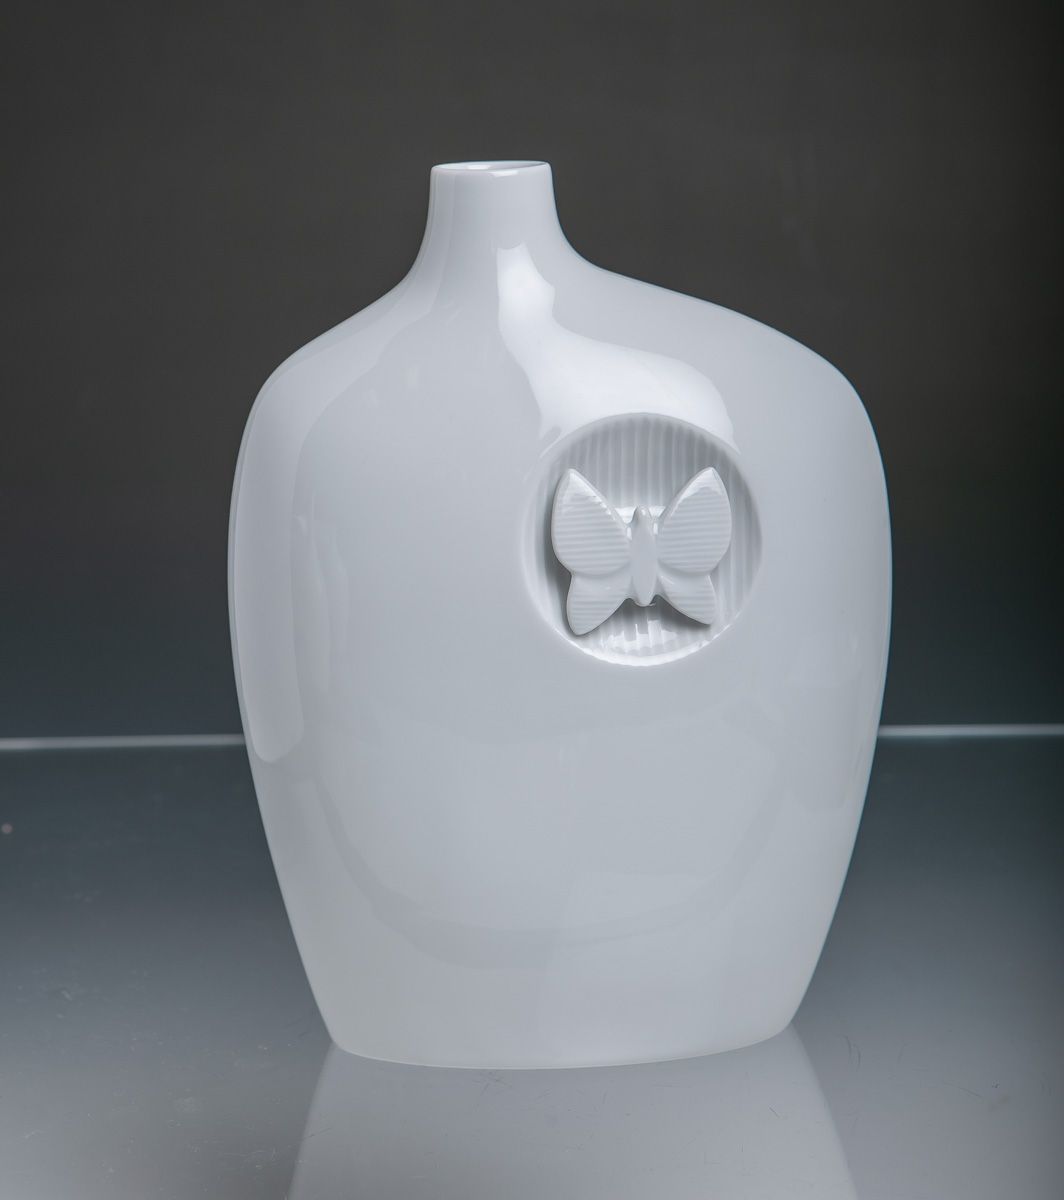 Null 花瓶（迈森，第一选择），白瓷，侧面扁平，正面有一只塑料蝴蝶，新闻编号50214，约22 x 17 x 8厘米。未损坏。